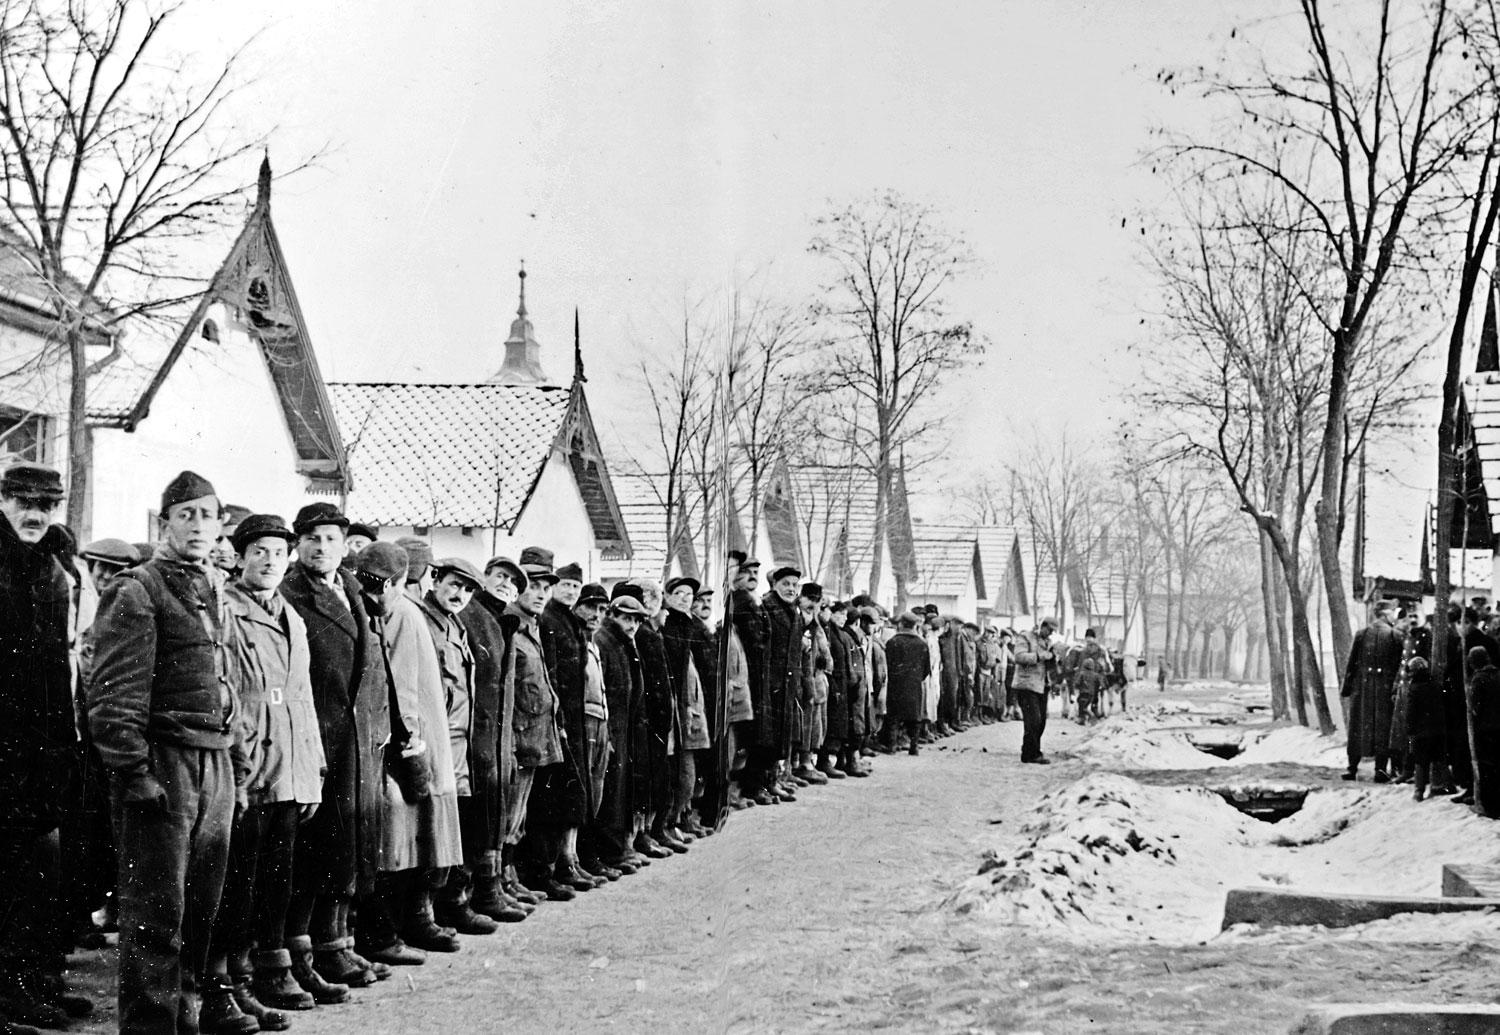 Munkaszolgálatosok a második világháború idején, Magyarországon